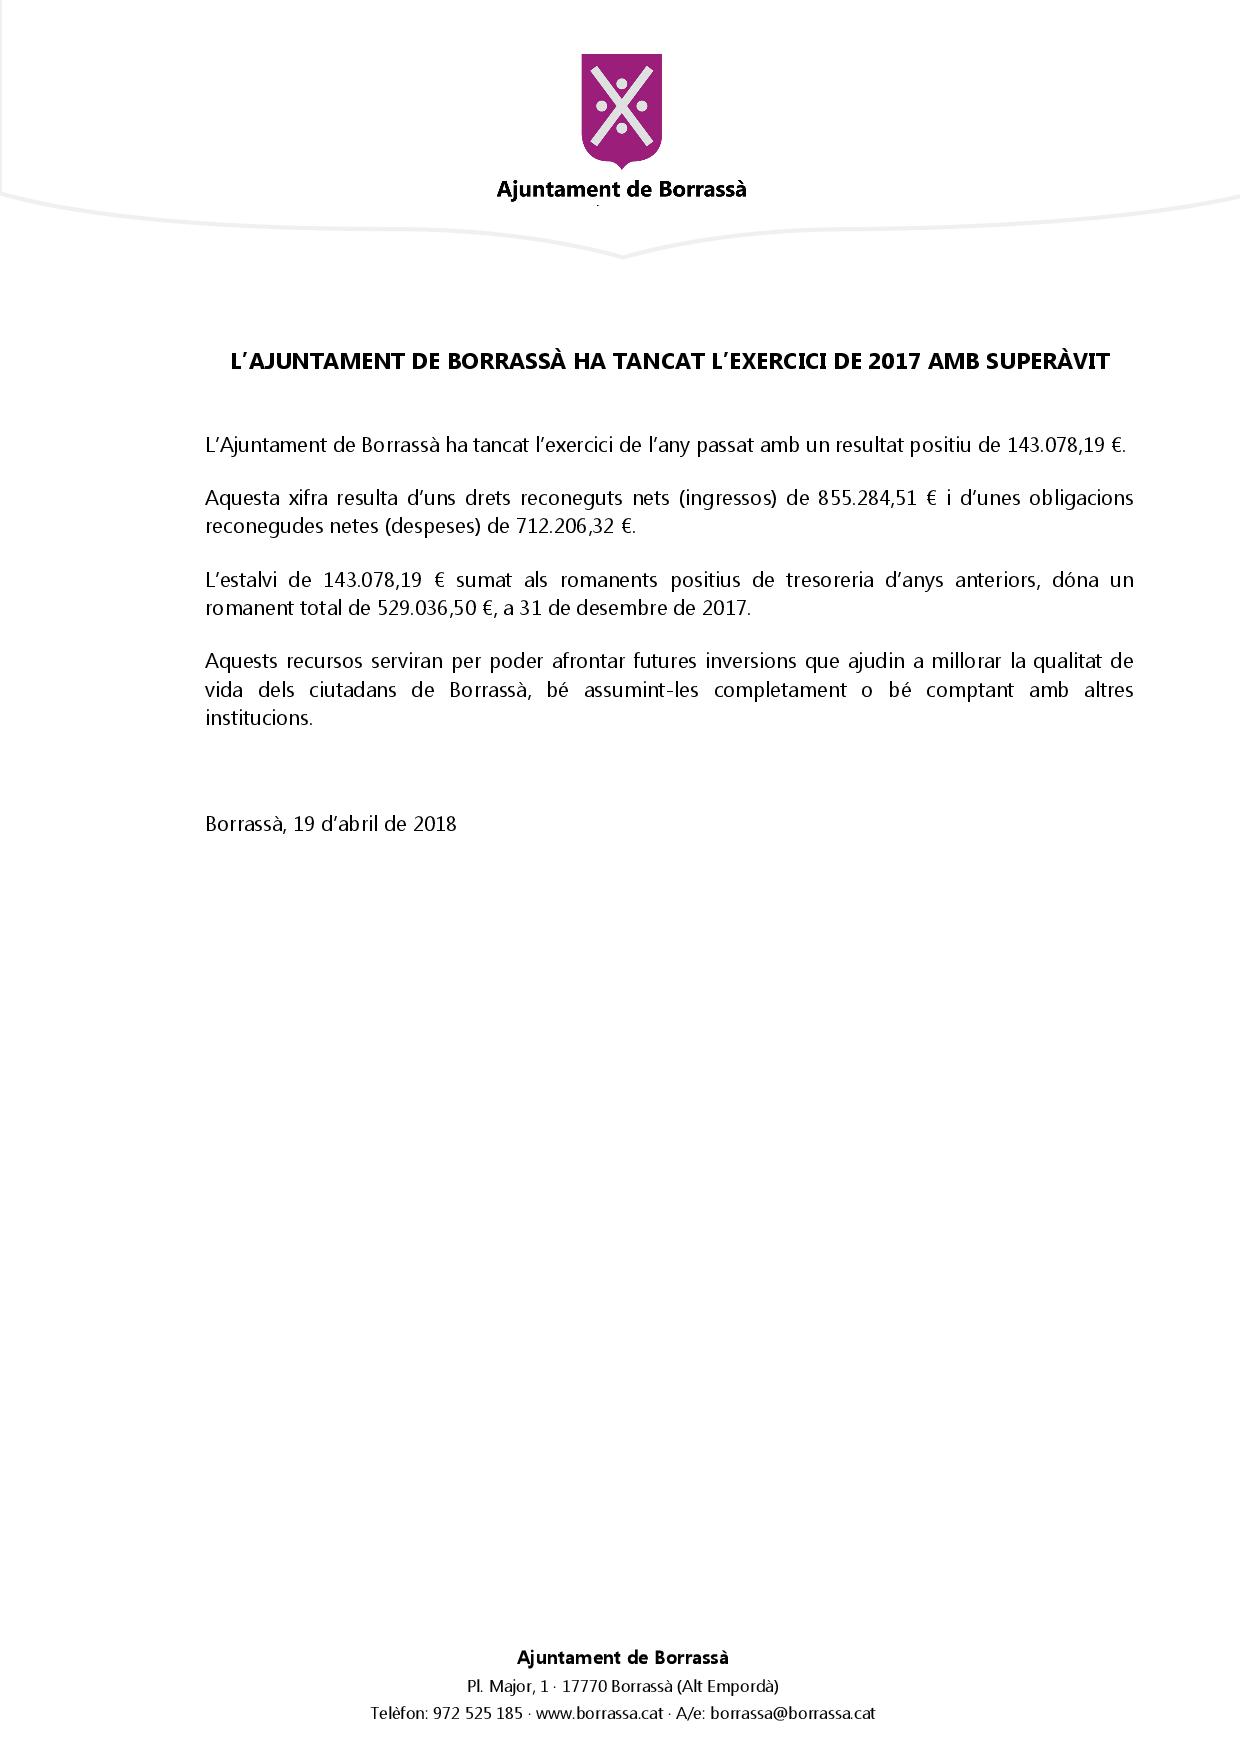 L’Ajuntament de Borrassà ha tancat l’exercici de l’any passat amb un resultat positiu de 143.078,19 €.